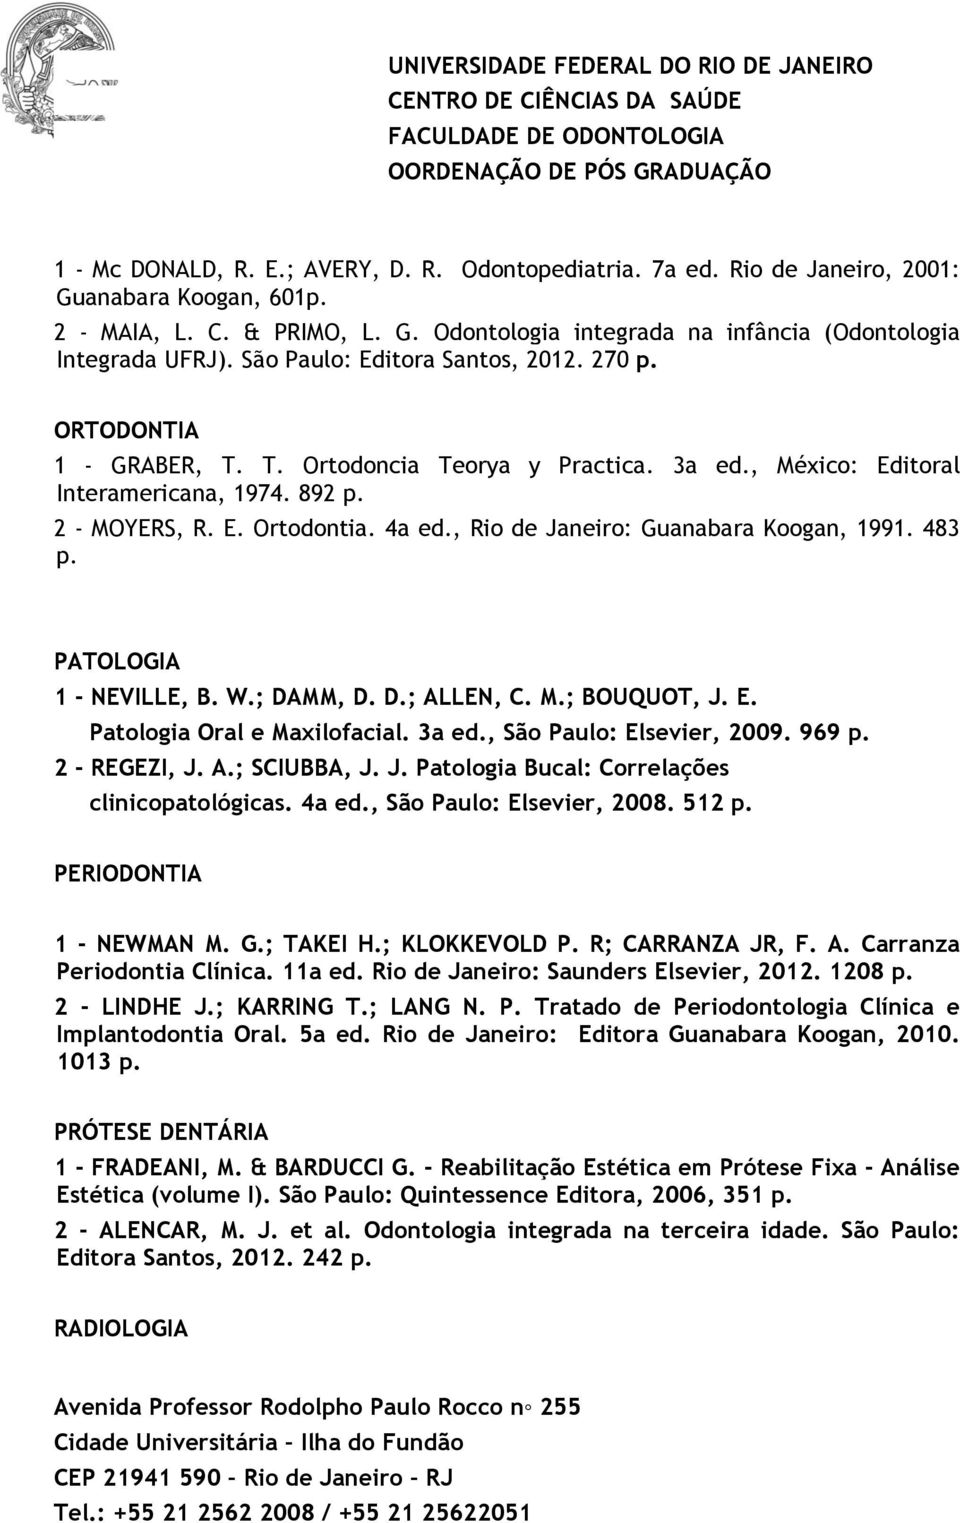 , Rio de Janeiro: Guanabara Koogan, 1991. 483 p. PATOLOGIA 1 - NEVILLE, B. W.; DAMM, D. D.; ALLEN, C. M.; BOUQUOT, J. E. Patologia Oral e Maxilofacial. 3a ed., São Paulo: Elsevier, 2009. 969 p.